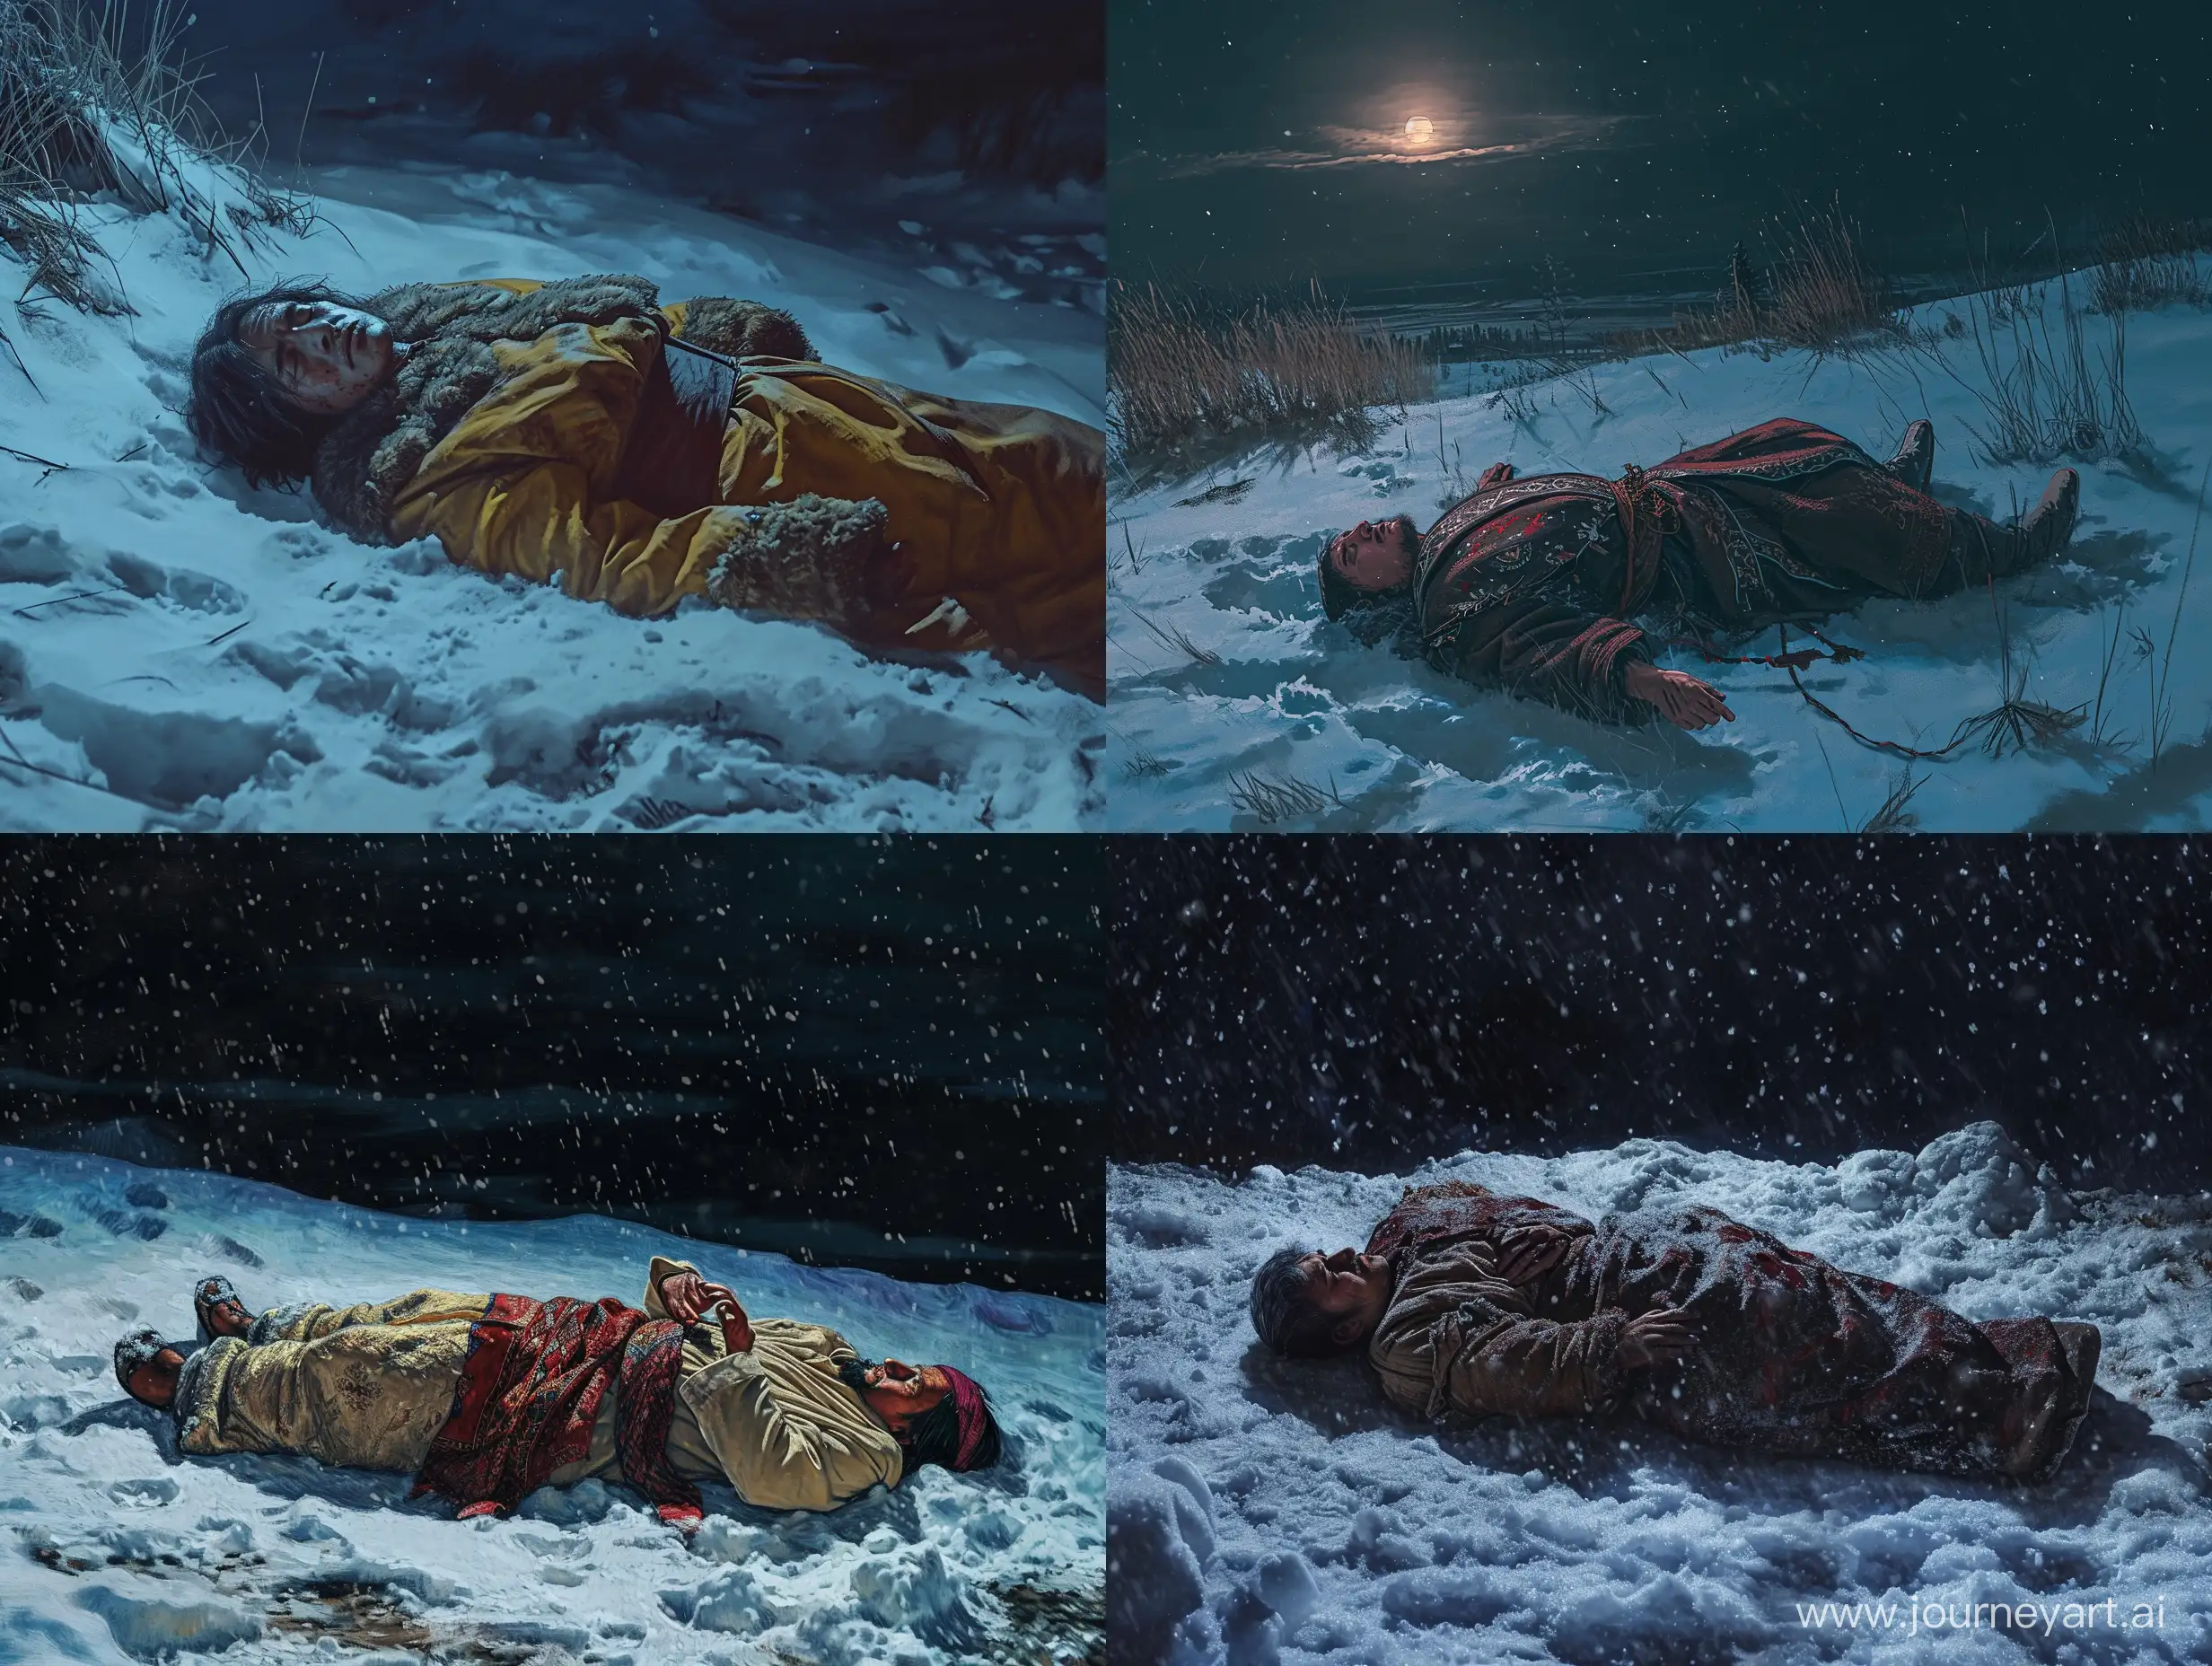 Нарисуй человека казахской национальность побитого который лежит на снегу ночью очень натурально